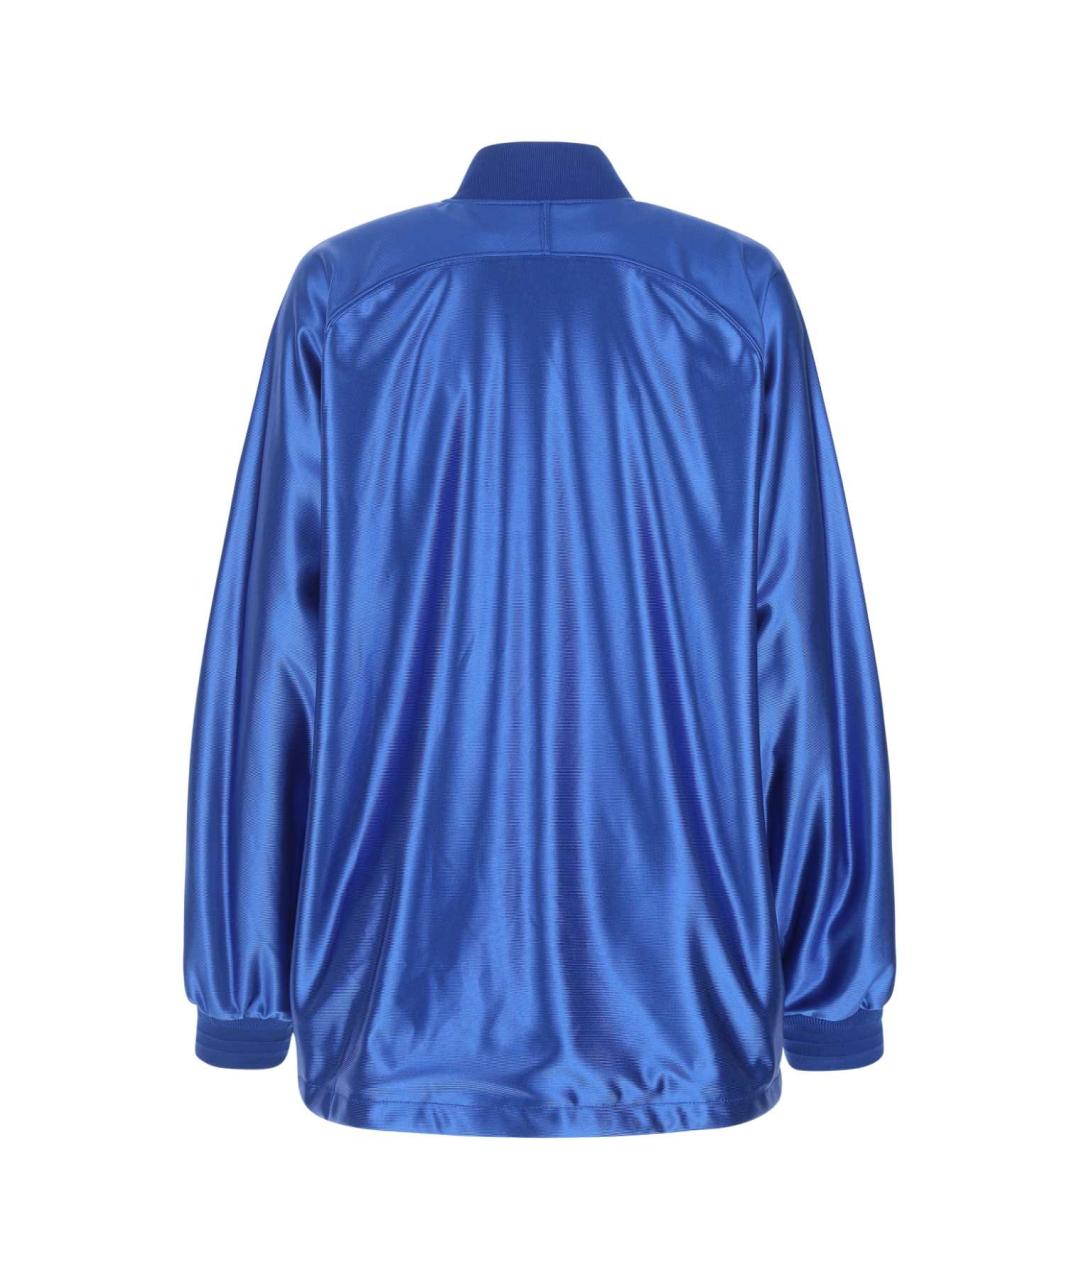 KHRISJOY Синяя полиэстеровая куртка, фото 2